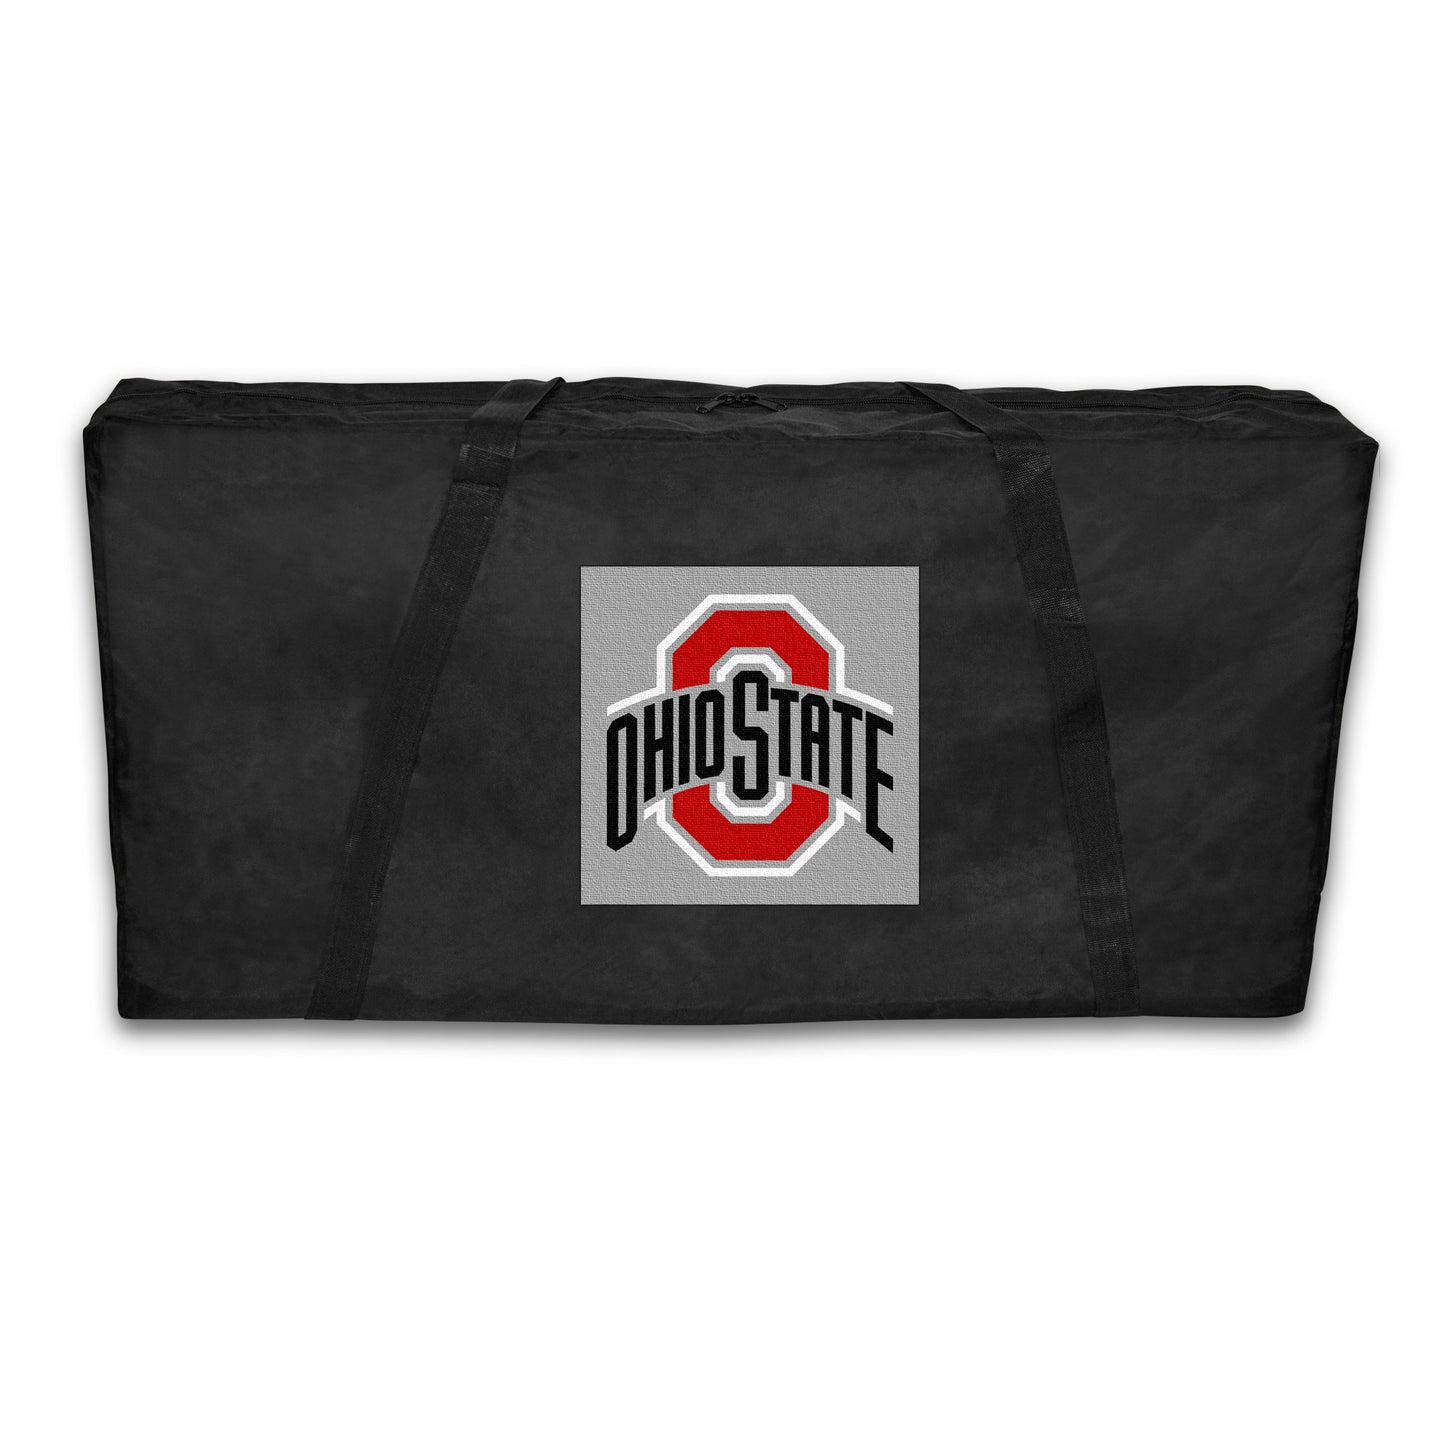 Ohio State University Cornhole Carrying Case